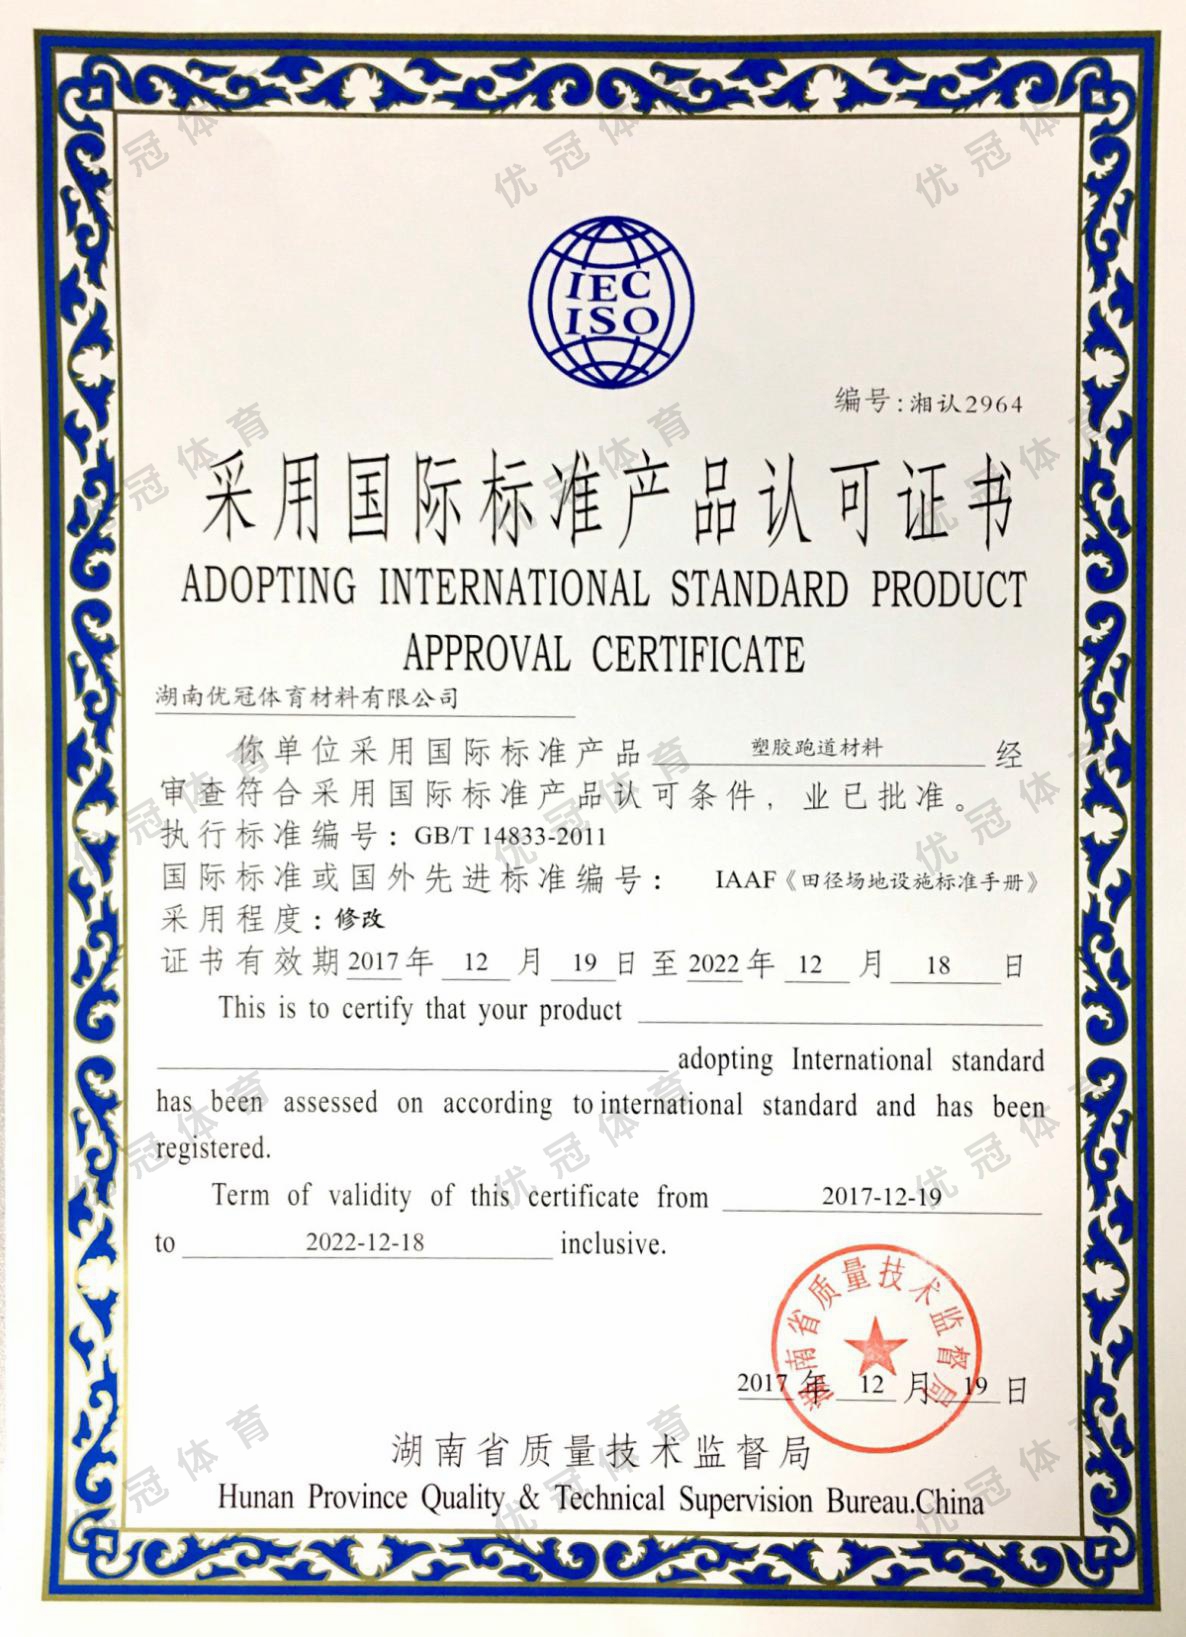 采用国际标准产品认可证书(塑胶跑道材料)